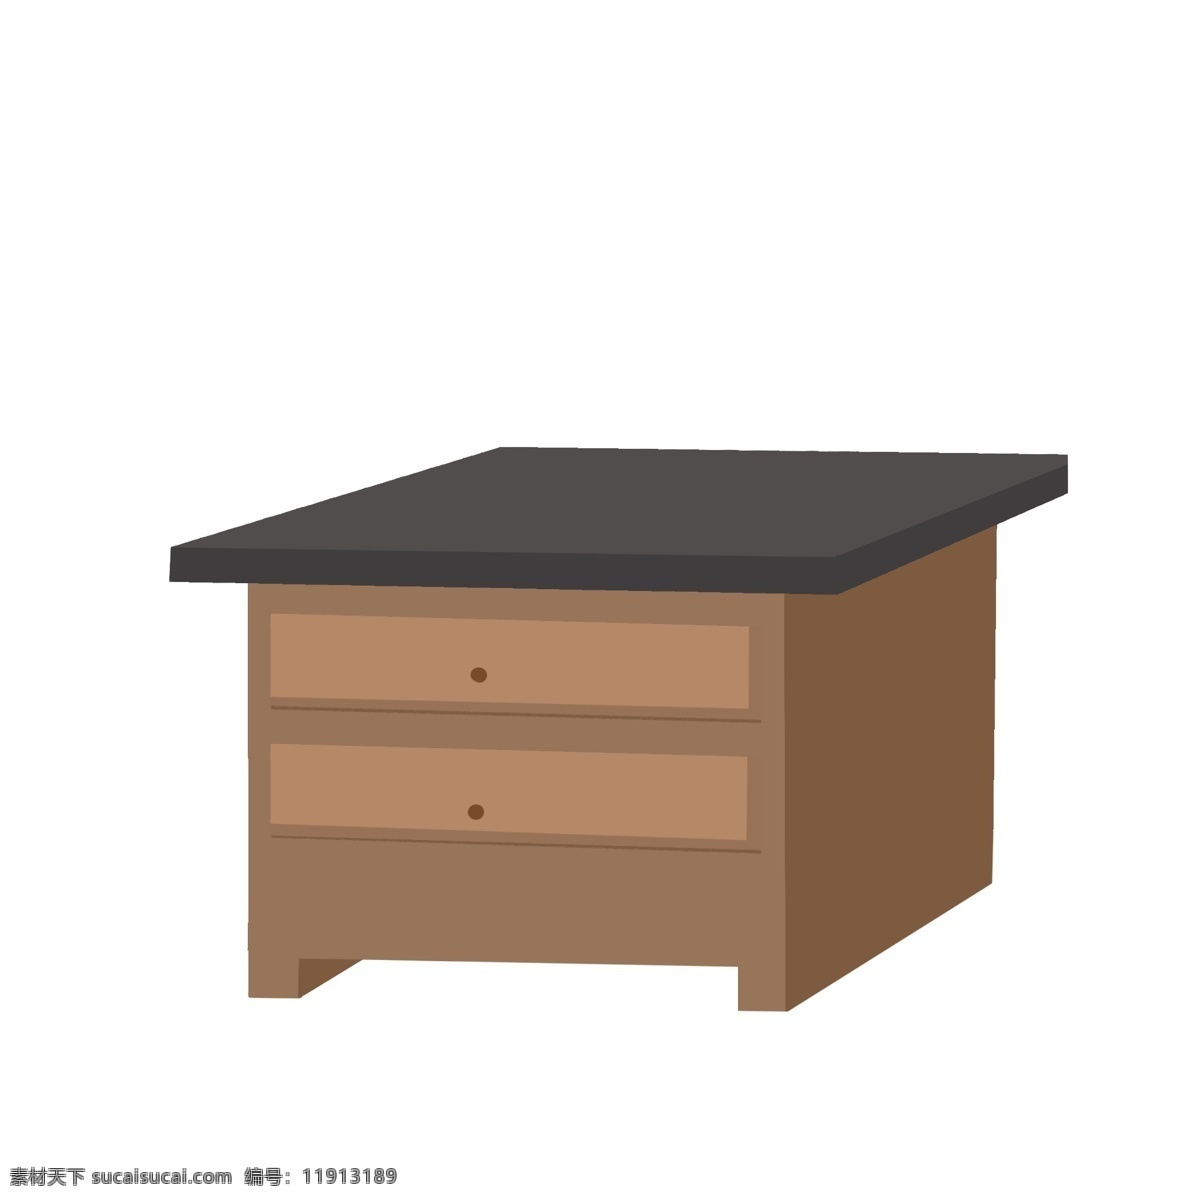 棕色 床头柜 家具 插画 棕色小柜子 插图 家具插画 床头柜子 柜子 深色柜子 棕色柜子 抽屉